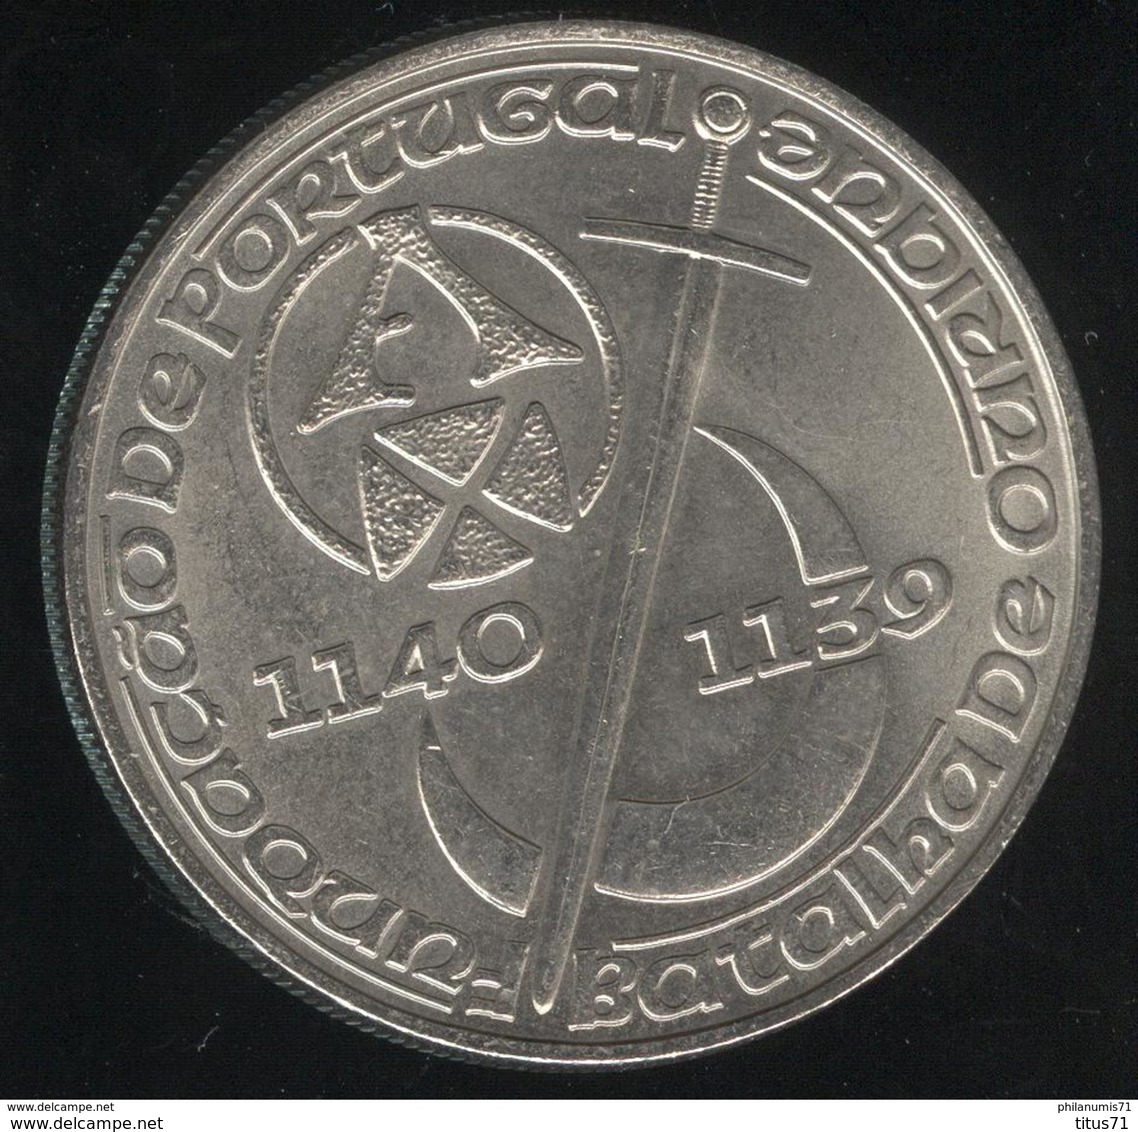 250 Escudos Portugal 1989 - 850 éme Anniversaire De La Fondation Du Portugal - Portugal